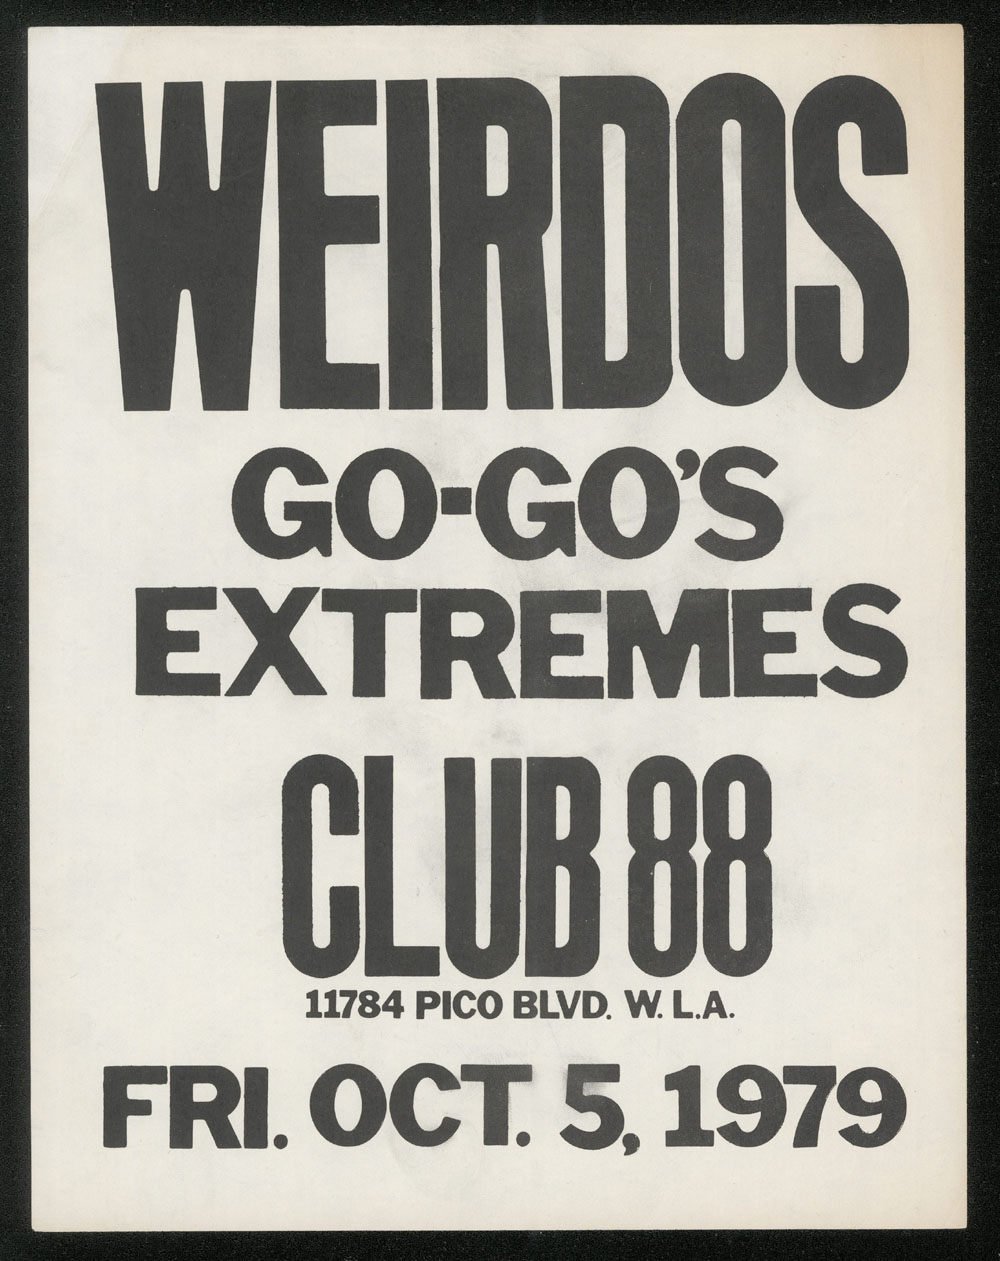 WEIRDOS w/ Go-Go's, Extremes at Club 88